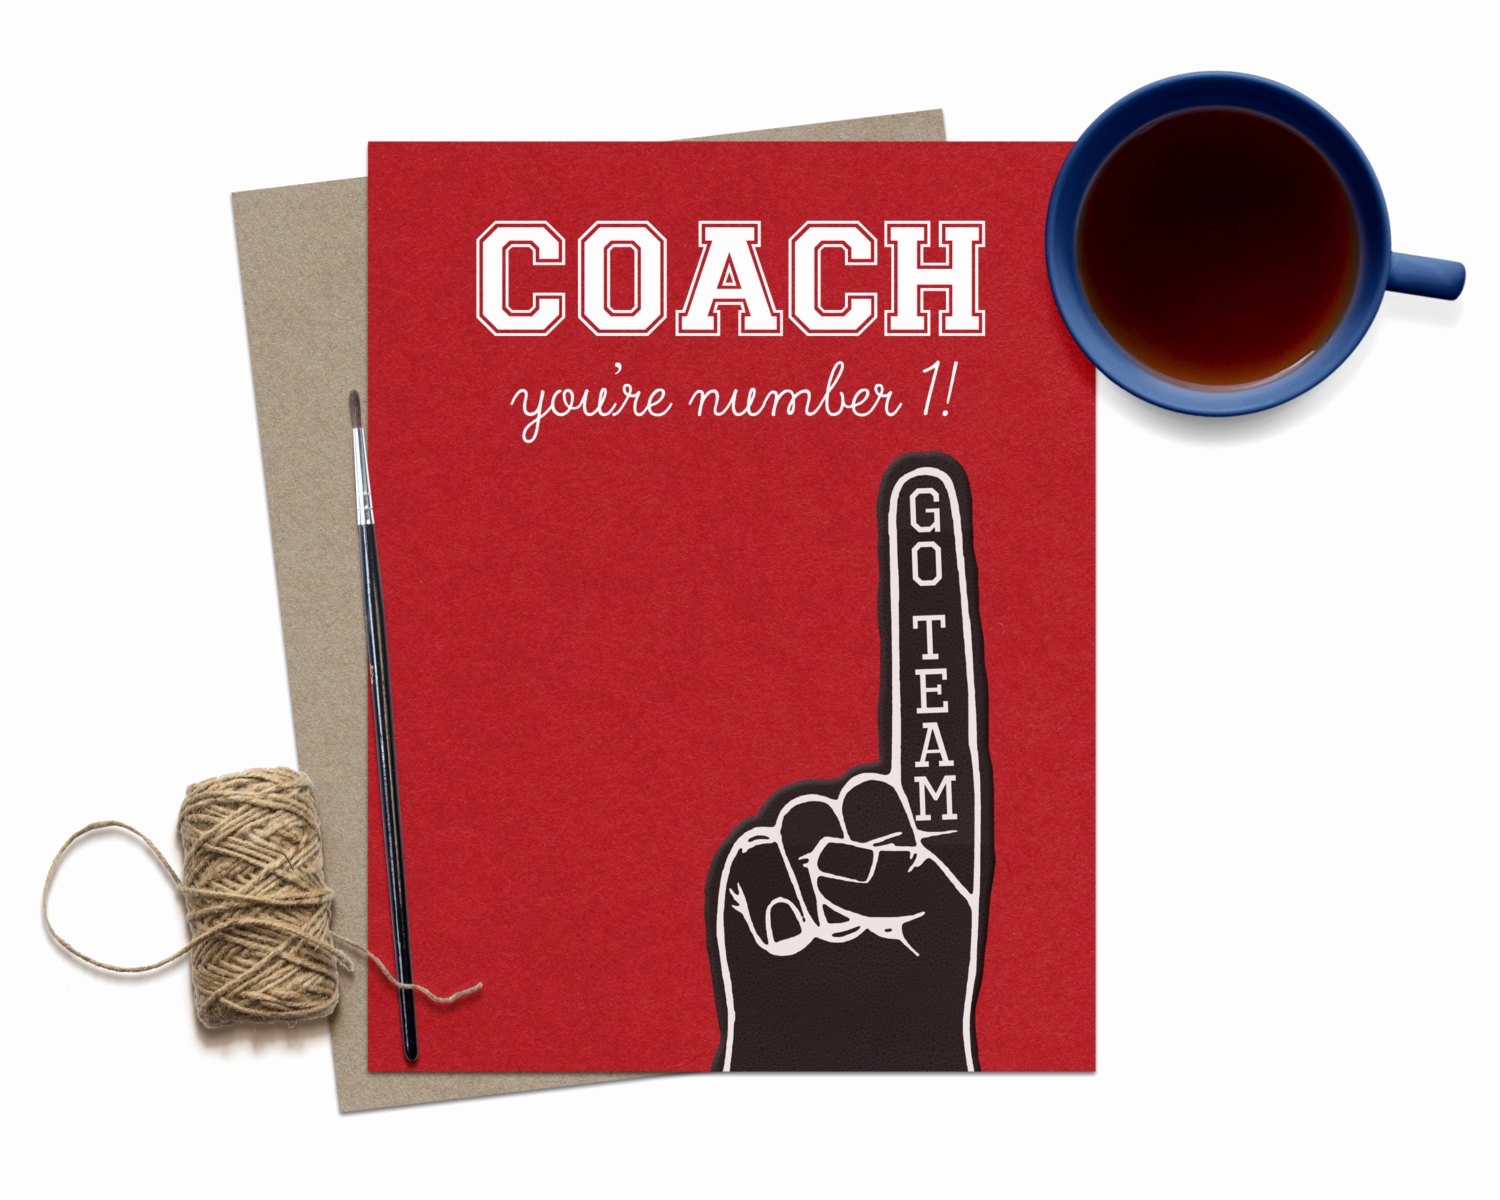 Coach Thank You Cards Unique Thank You Coach Greeting Card Coach Card Thank You Coach